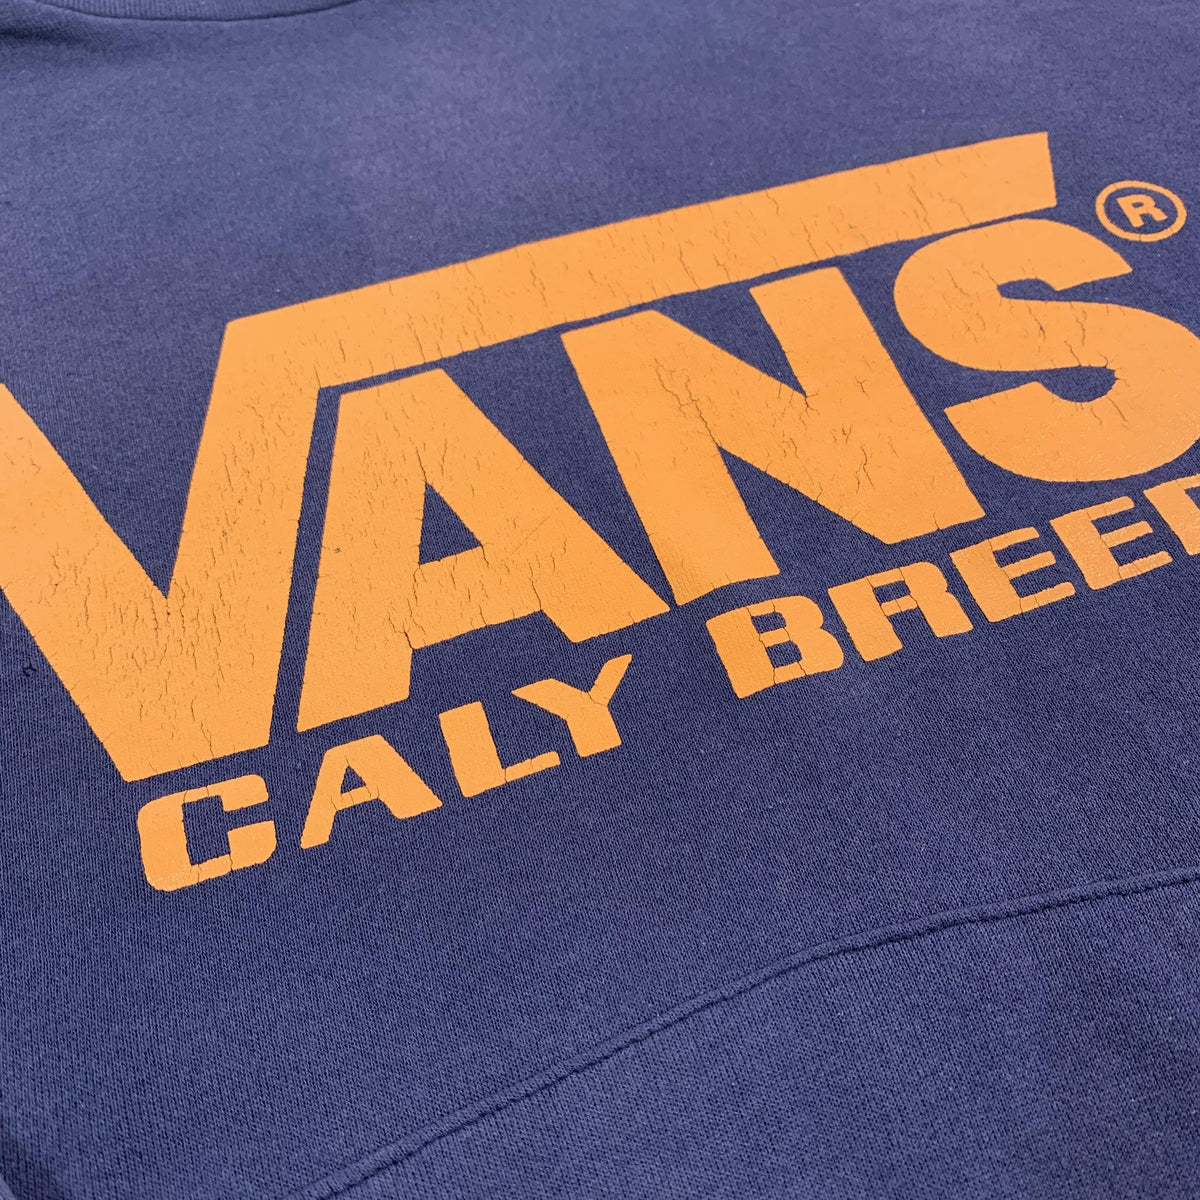 Vintage Vans &quot;Caly Breed&quot; Pullover Sweatshirt - jointcustodydc